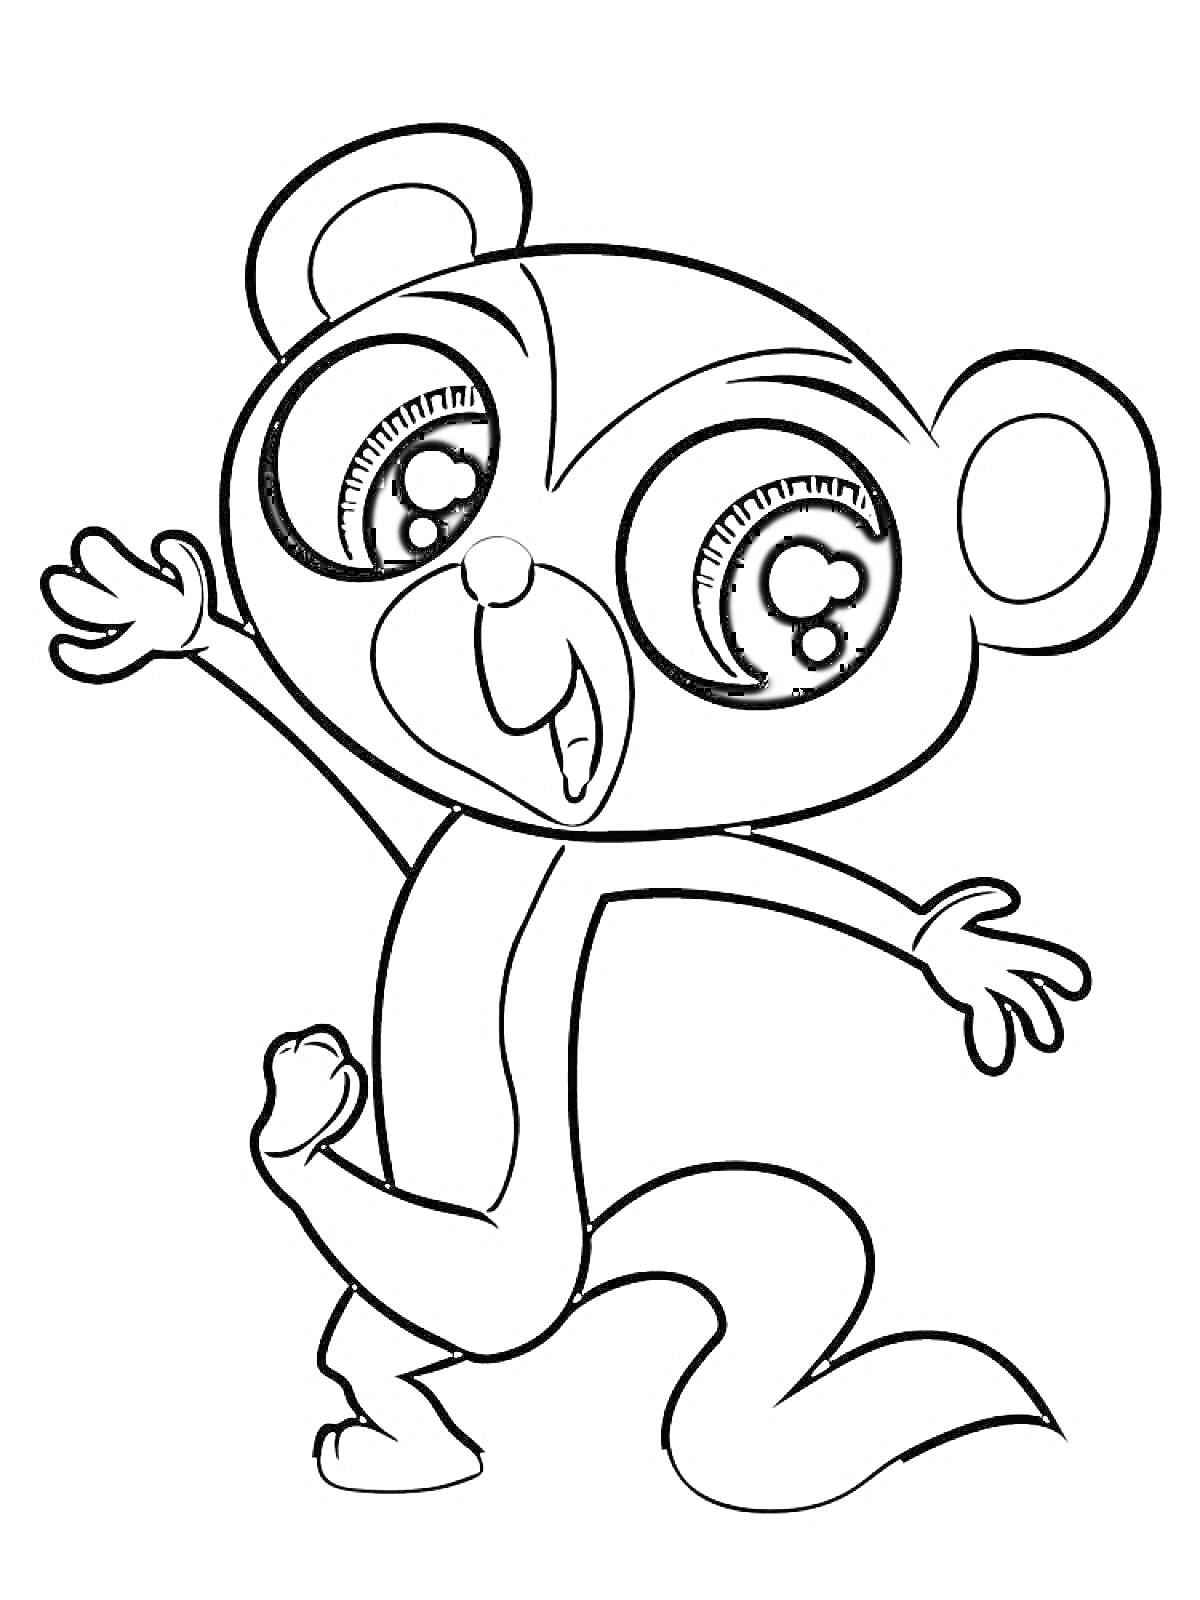 Маленькая обезьянка с большими глазами машет рукой